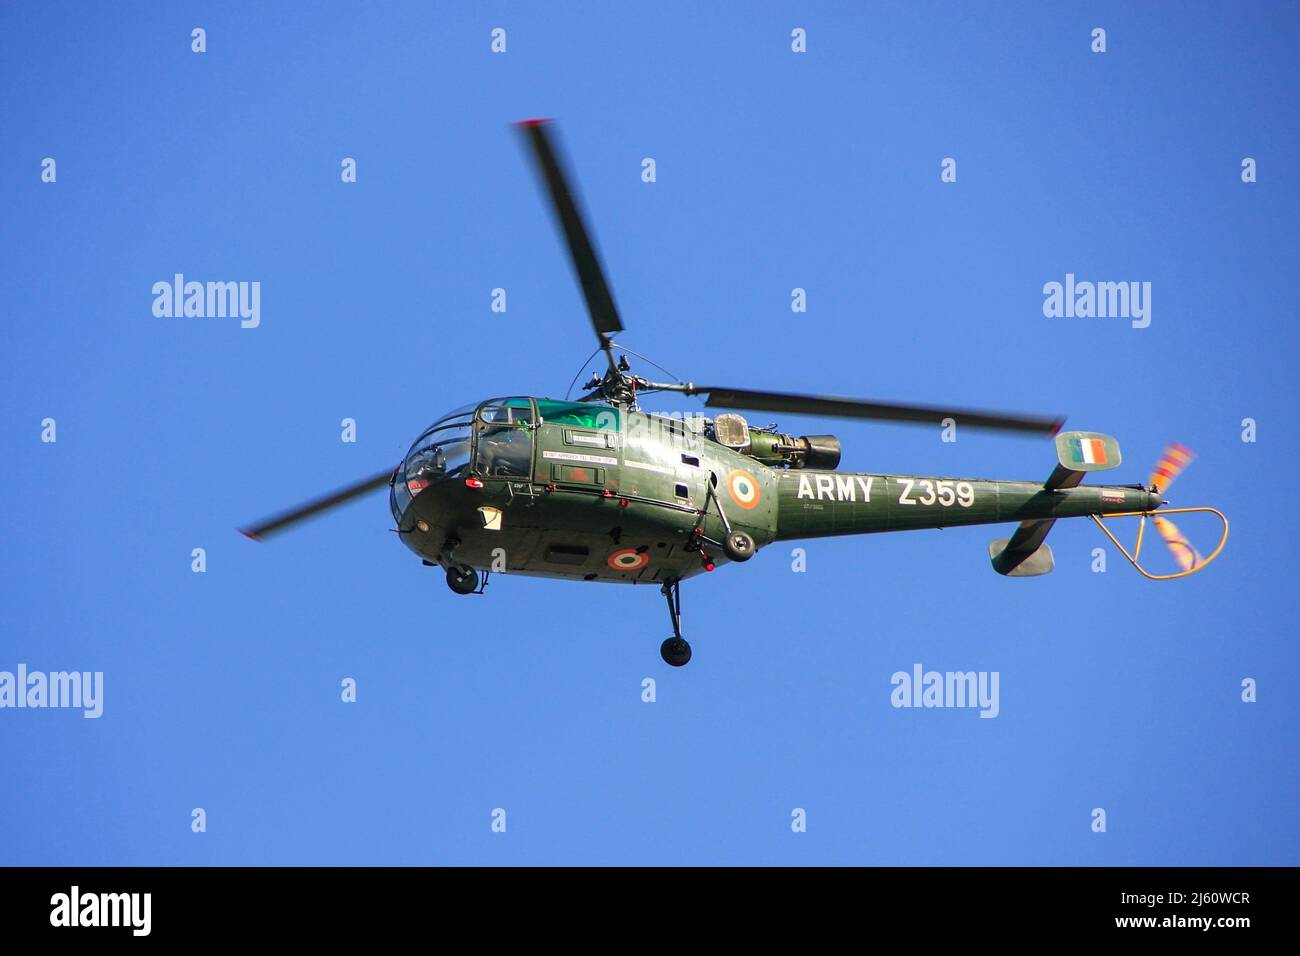 Un helicóptero militar en azul cielo, Jaipur, Rajasthan, India. El Cuerpo de Aviación del Ejército es un componente del Ejército de la India, formado el 1 de noviembre de 1986. Foto de stock